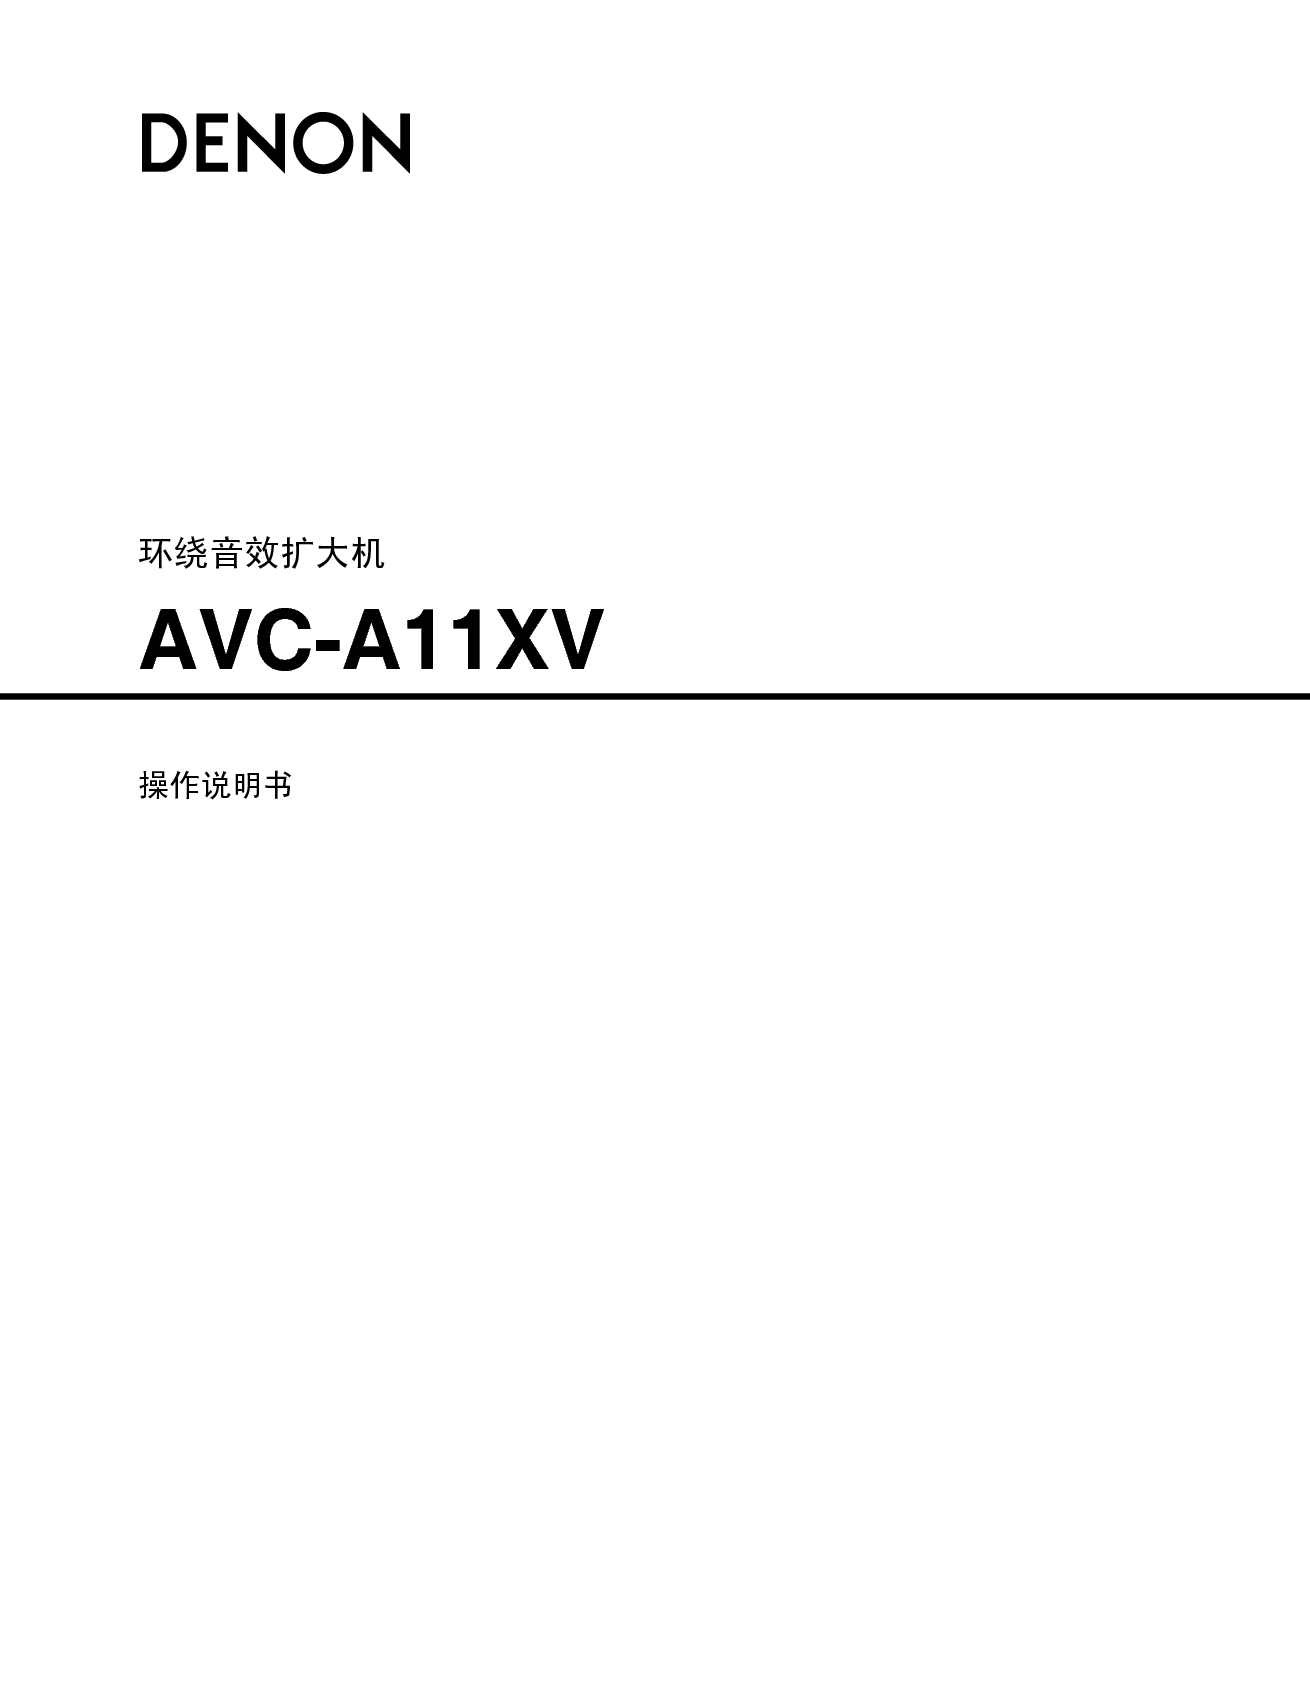 天龙 Denon AVC-A11XV 说明书 封面